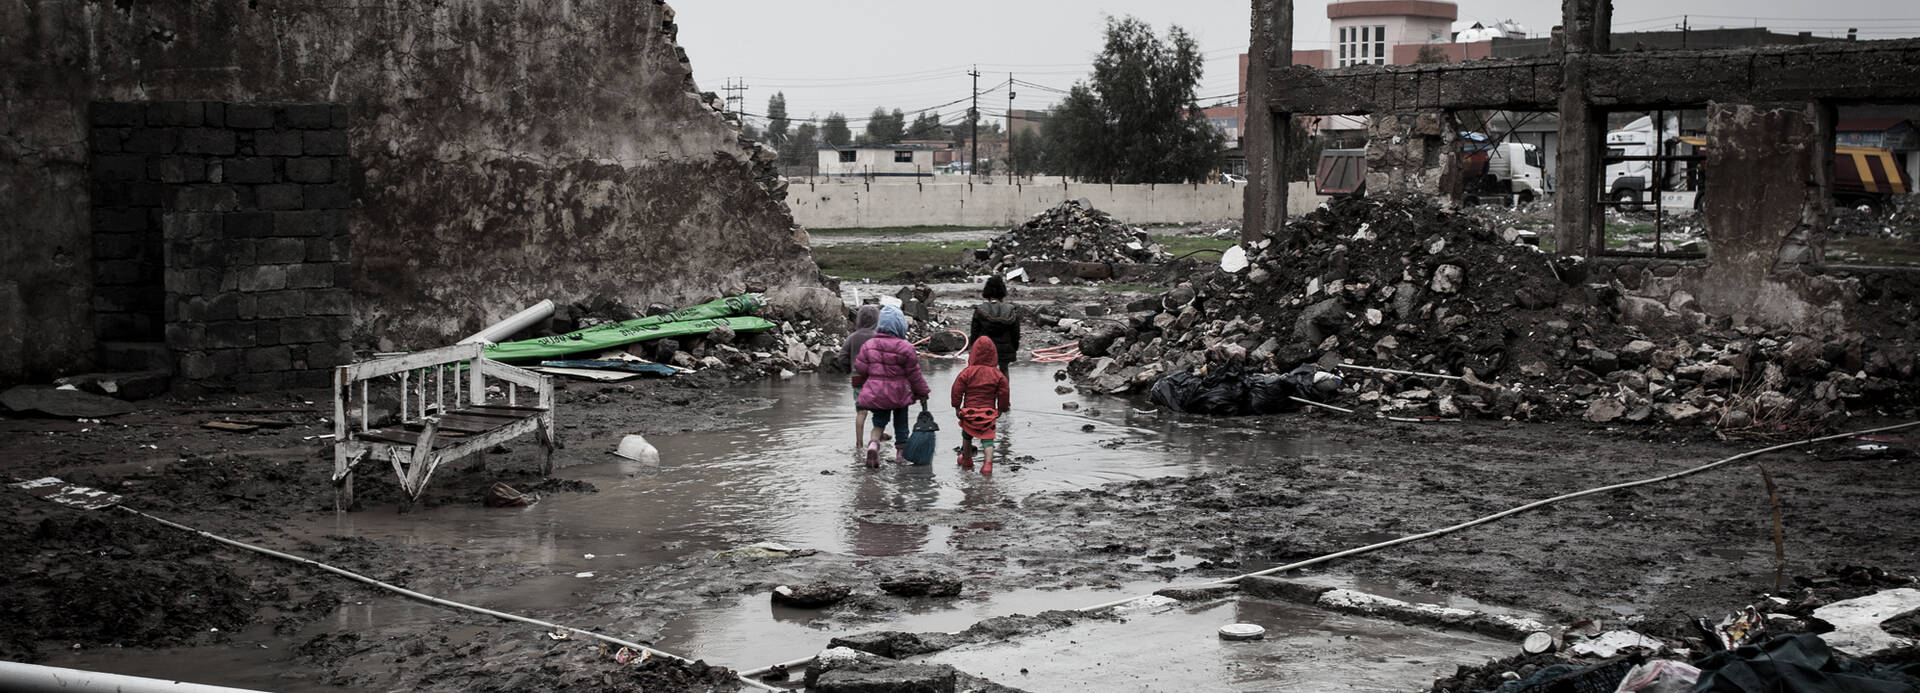 Kinder laufen durch vom Krieg zerstörte Stadt.